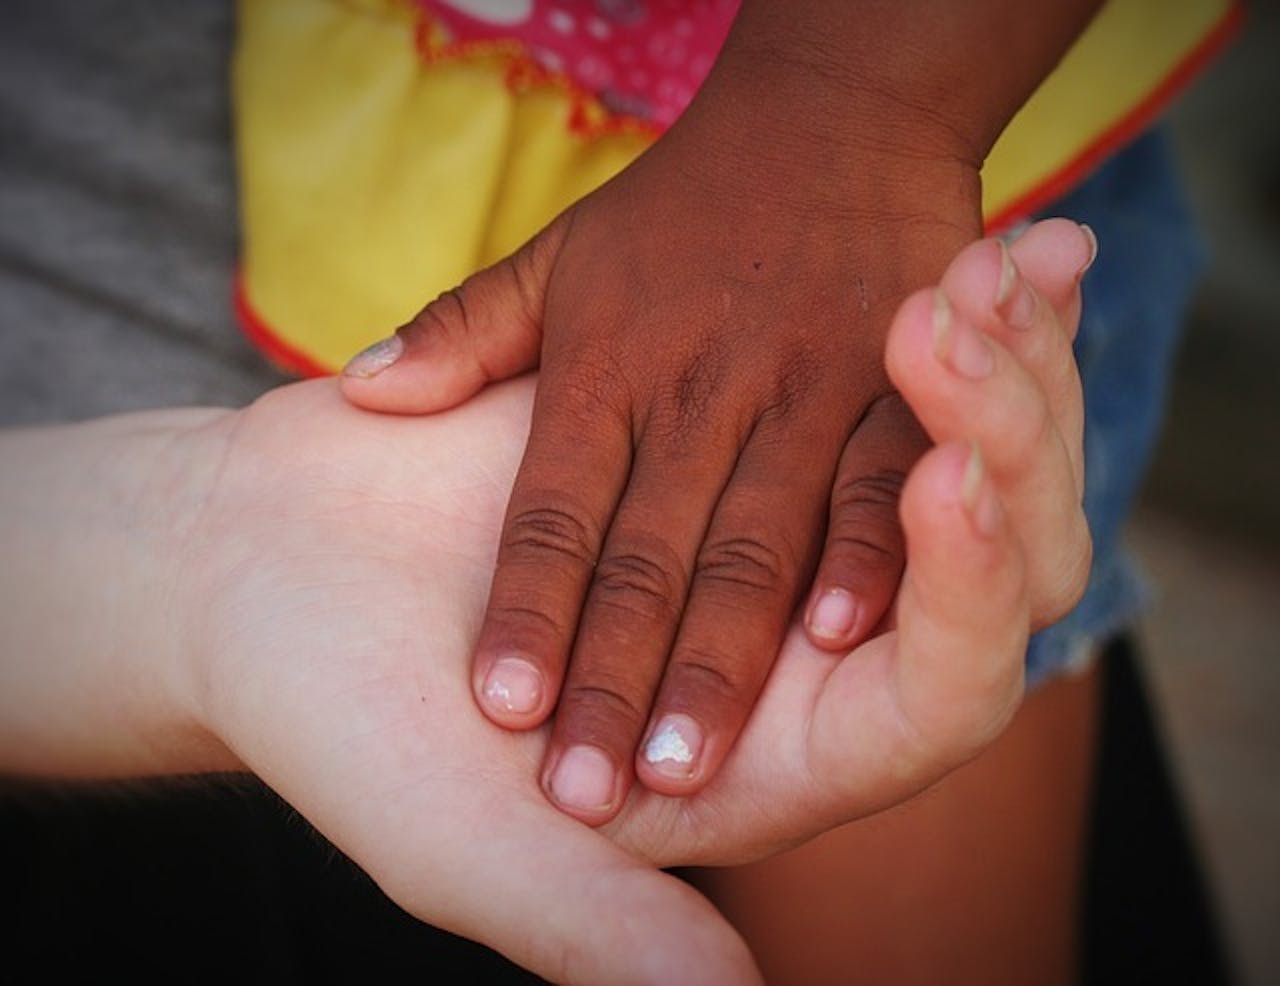 De hand van een persoon ligt in de hand van een tweede persoon. De handen hebben allebei een andere huidskleur.